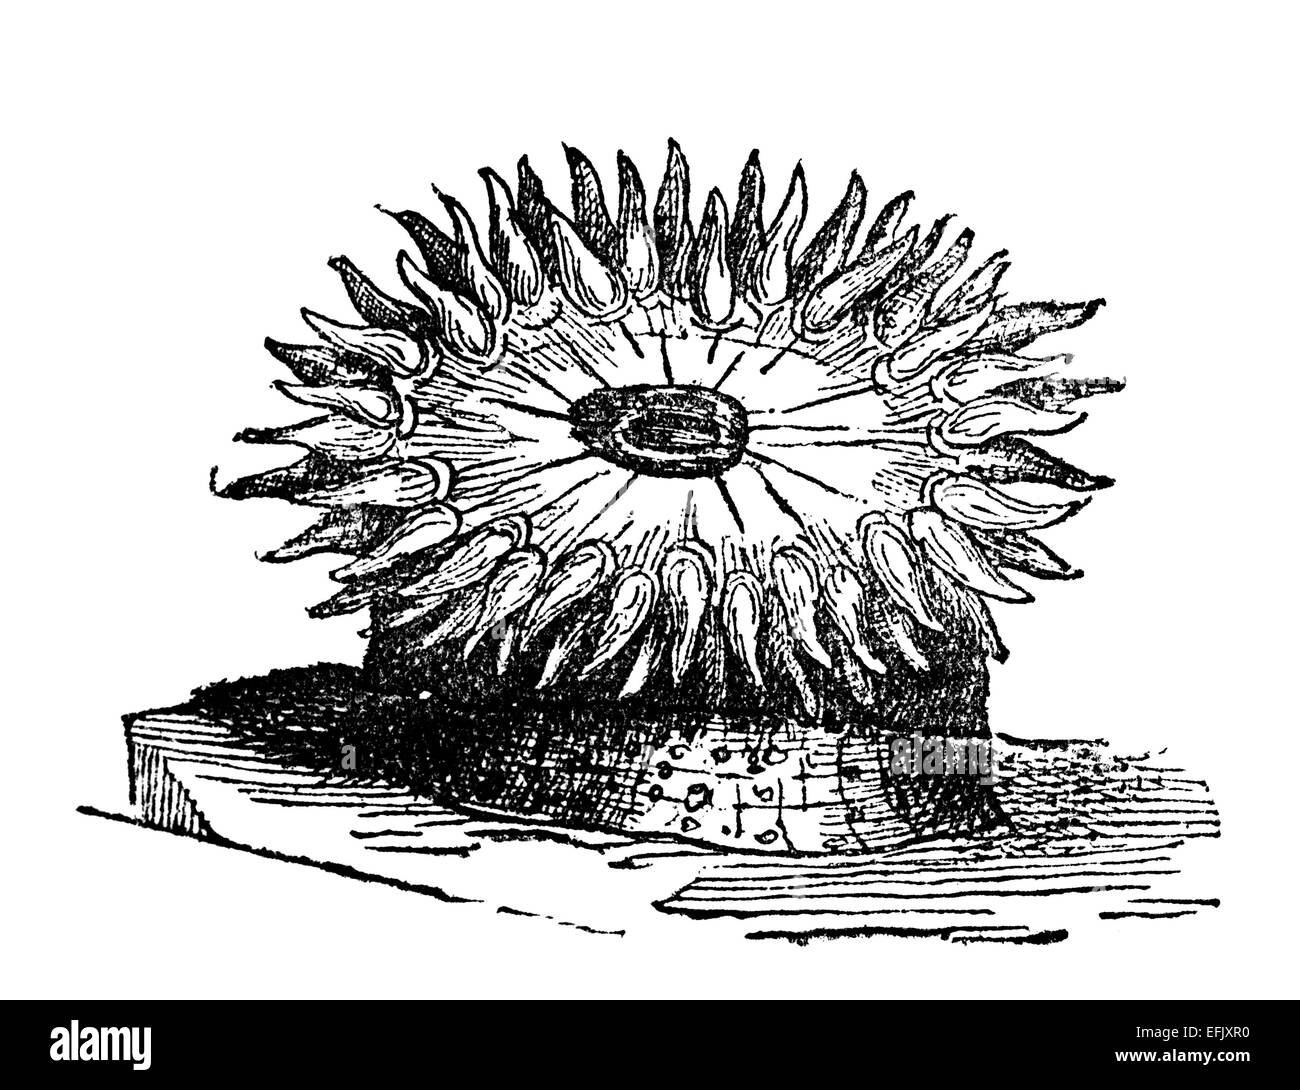 La gravure de l'époque victorienne une anémone. Image restaurée numériquement à partir d'un milieu du xixe siècle l'encyclopédie. Banque D'Images